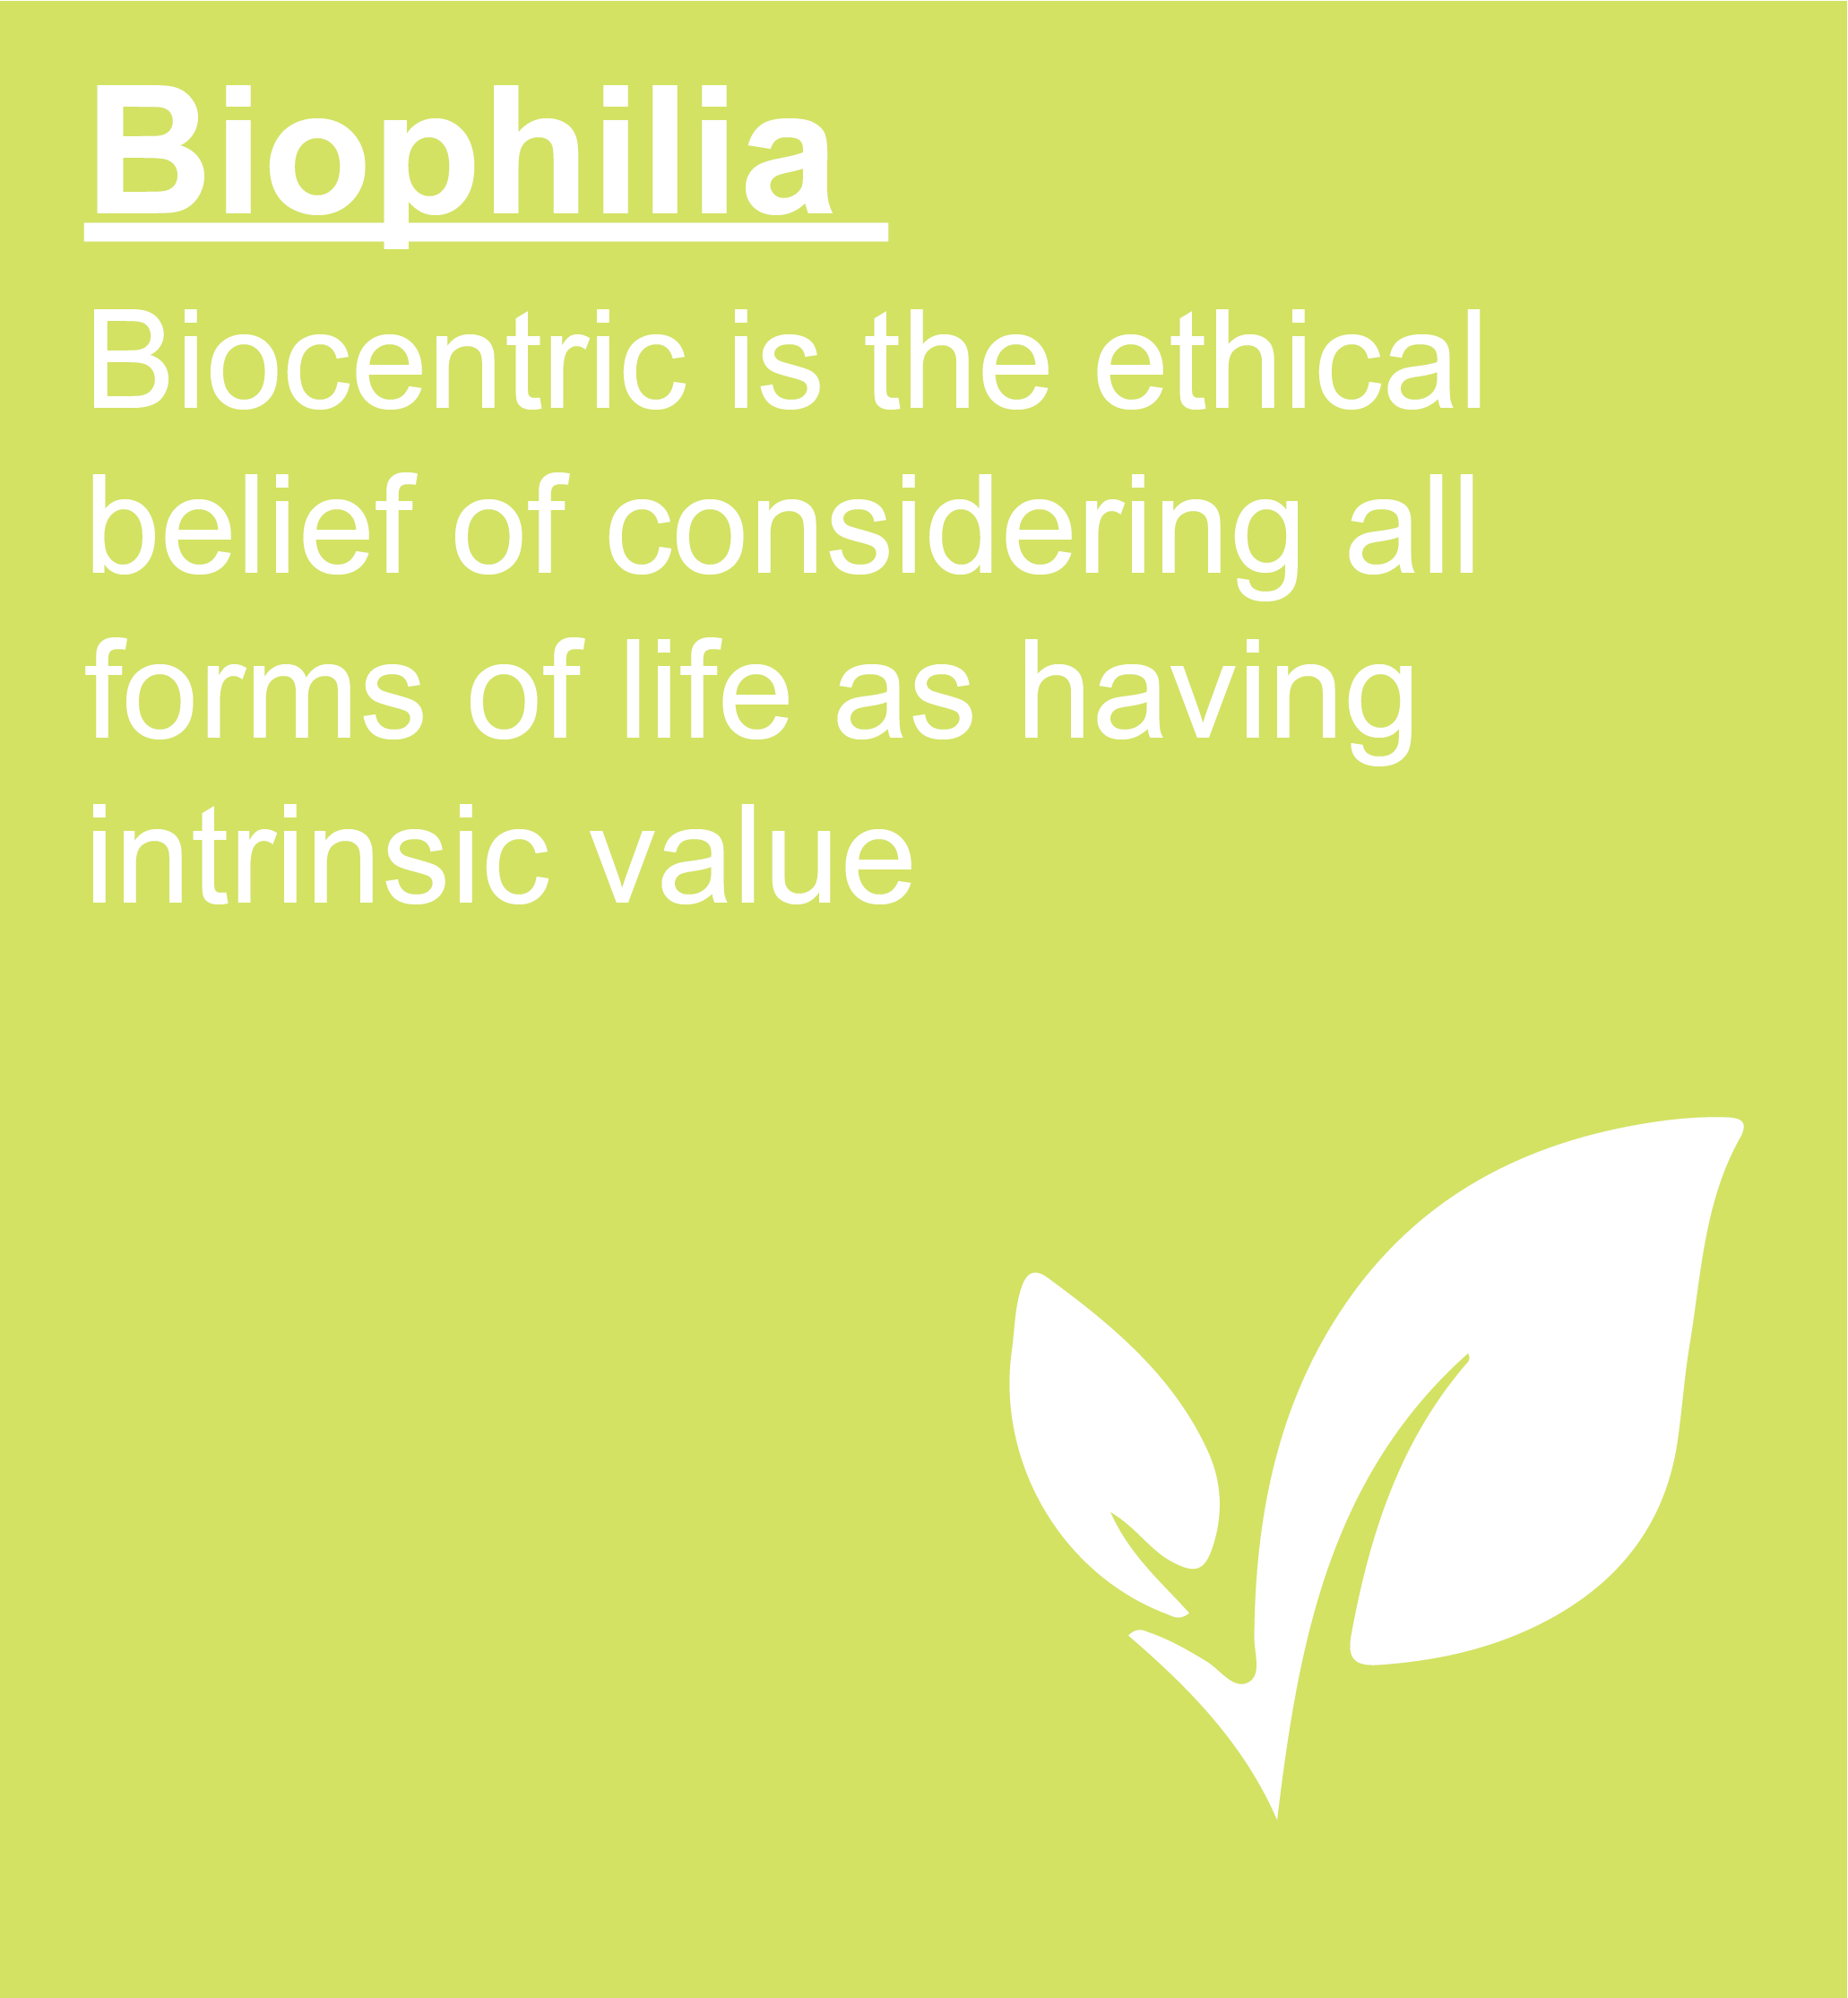 Biophilia-Linkbox